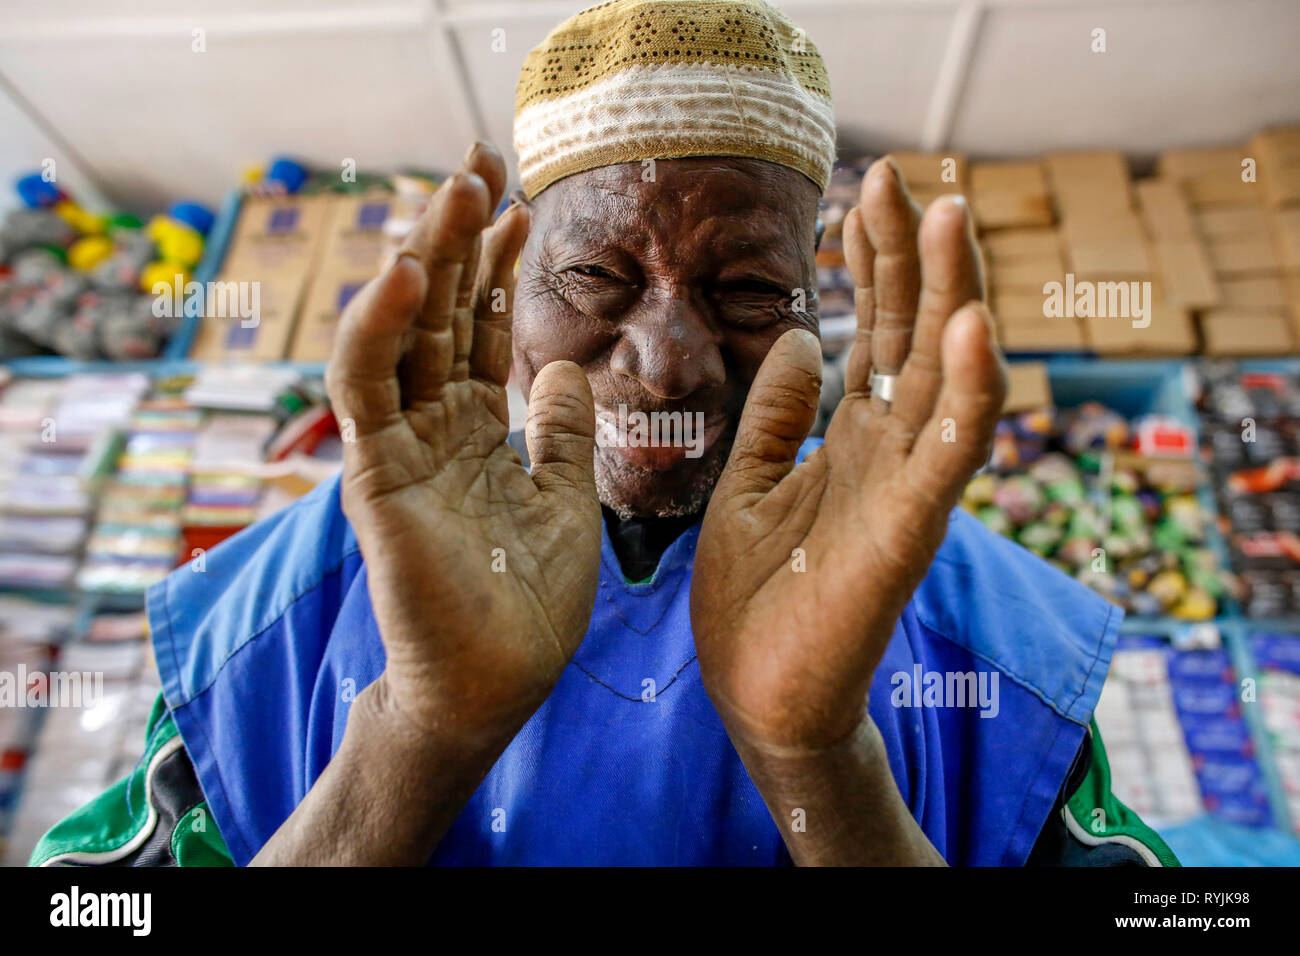 Saludo musulmán un extraño en una tienda de Tenkodogo, Burkina Faso. Foto de stock